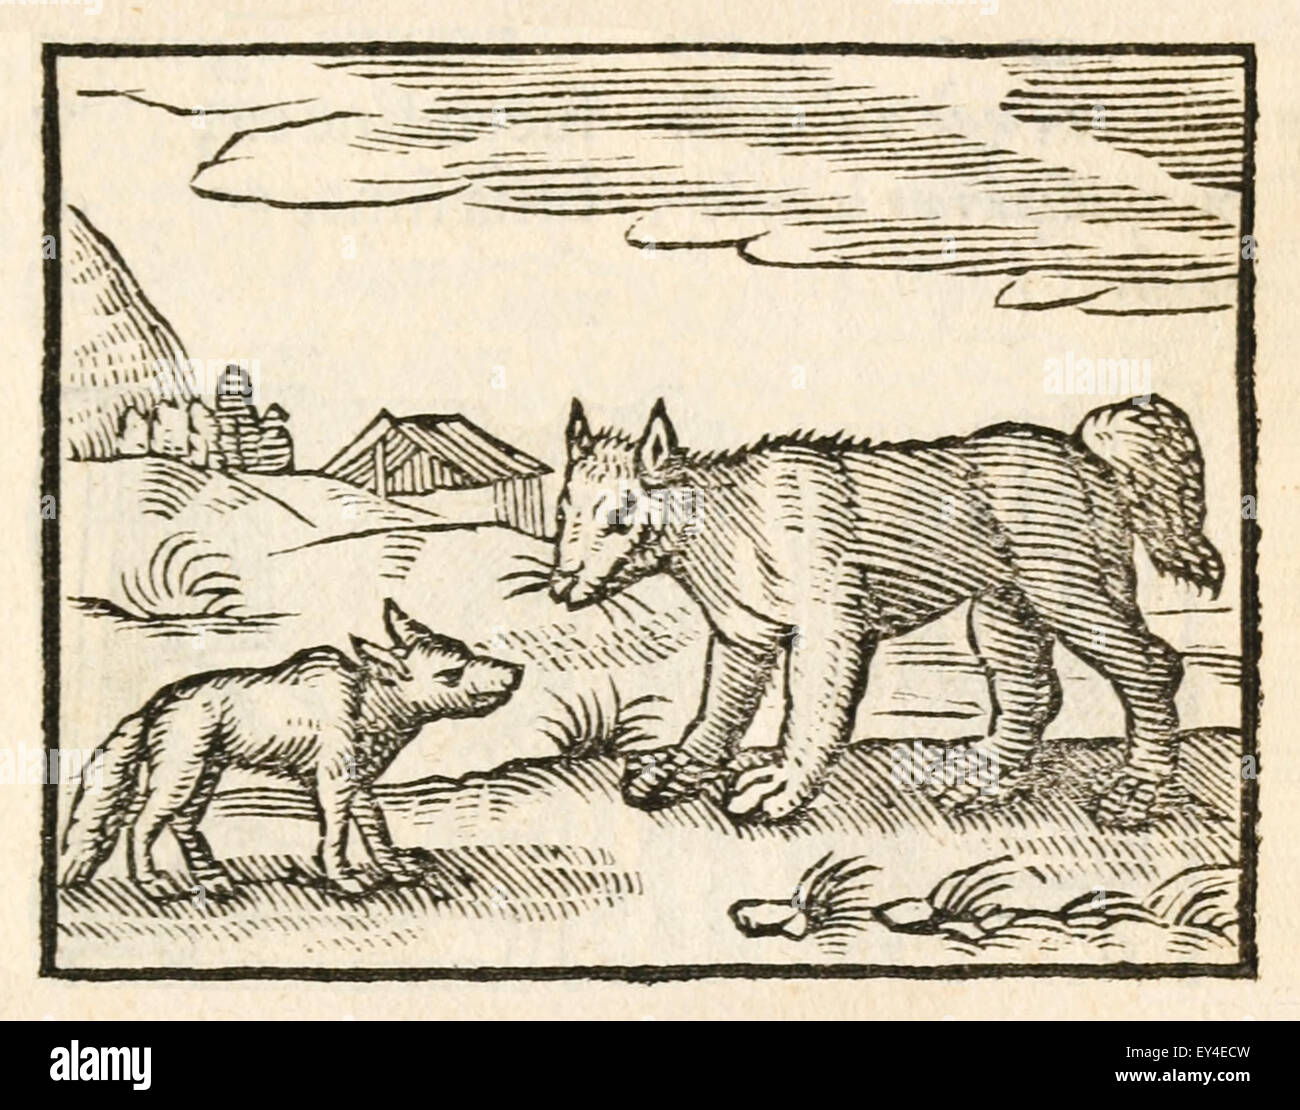 "Le chien et le loup' fable d'Ésope (vers 600 avant JC). Un loup affamé rencontre un chien bien nourri et compliments pour son élégance. Le chien décrit sa vie de facilité et invite le loup à le rejoindre. Comme ils vont sur leur chemin, le loup se demande pourquoi la fourrure sur le cou du chien est usée. Il répond que c'est simplement causé par le col qu'il a à porter à la maison. Le loup puis le quitte, déclarant qu'un ventre plein est un mauvais prix à payer pour la liberté. 17e siècle gravure sur bois illustrant les Fables d'Ésope. Voir la description pour plus d'informations. Banque D'Images